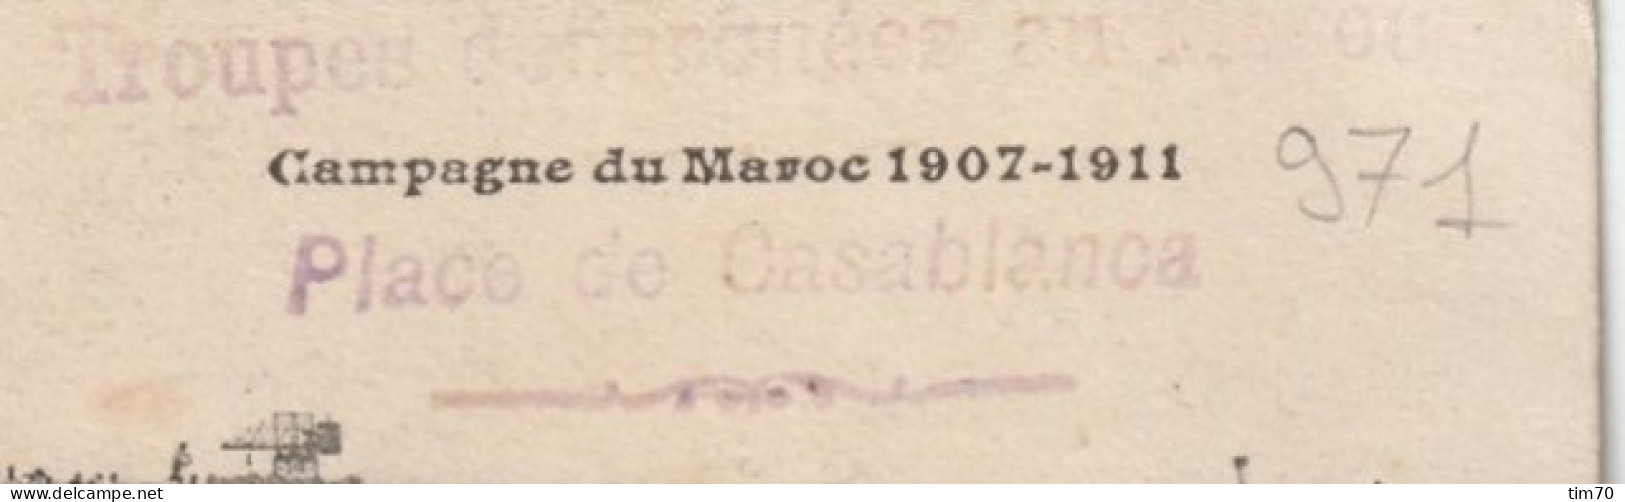 CT   CAMPAGNE  DU  MAROC  1907 -  1911    TROUPES  DEBARQUEES AU  MAROC  PLACE DE  CASABLANCA - Covers & Documents